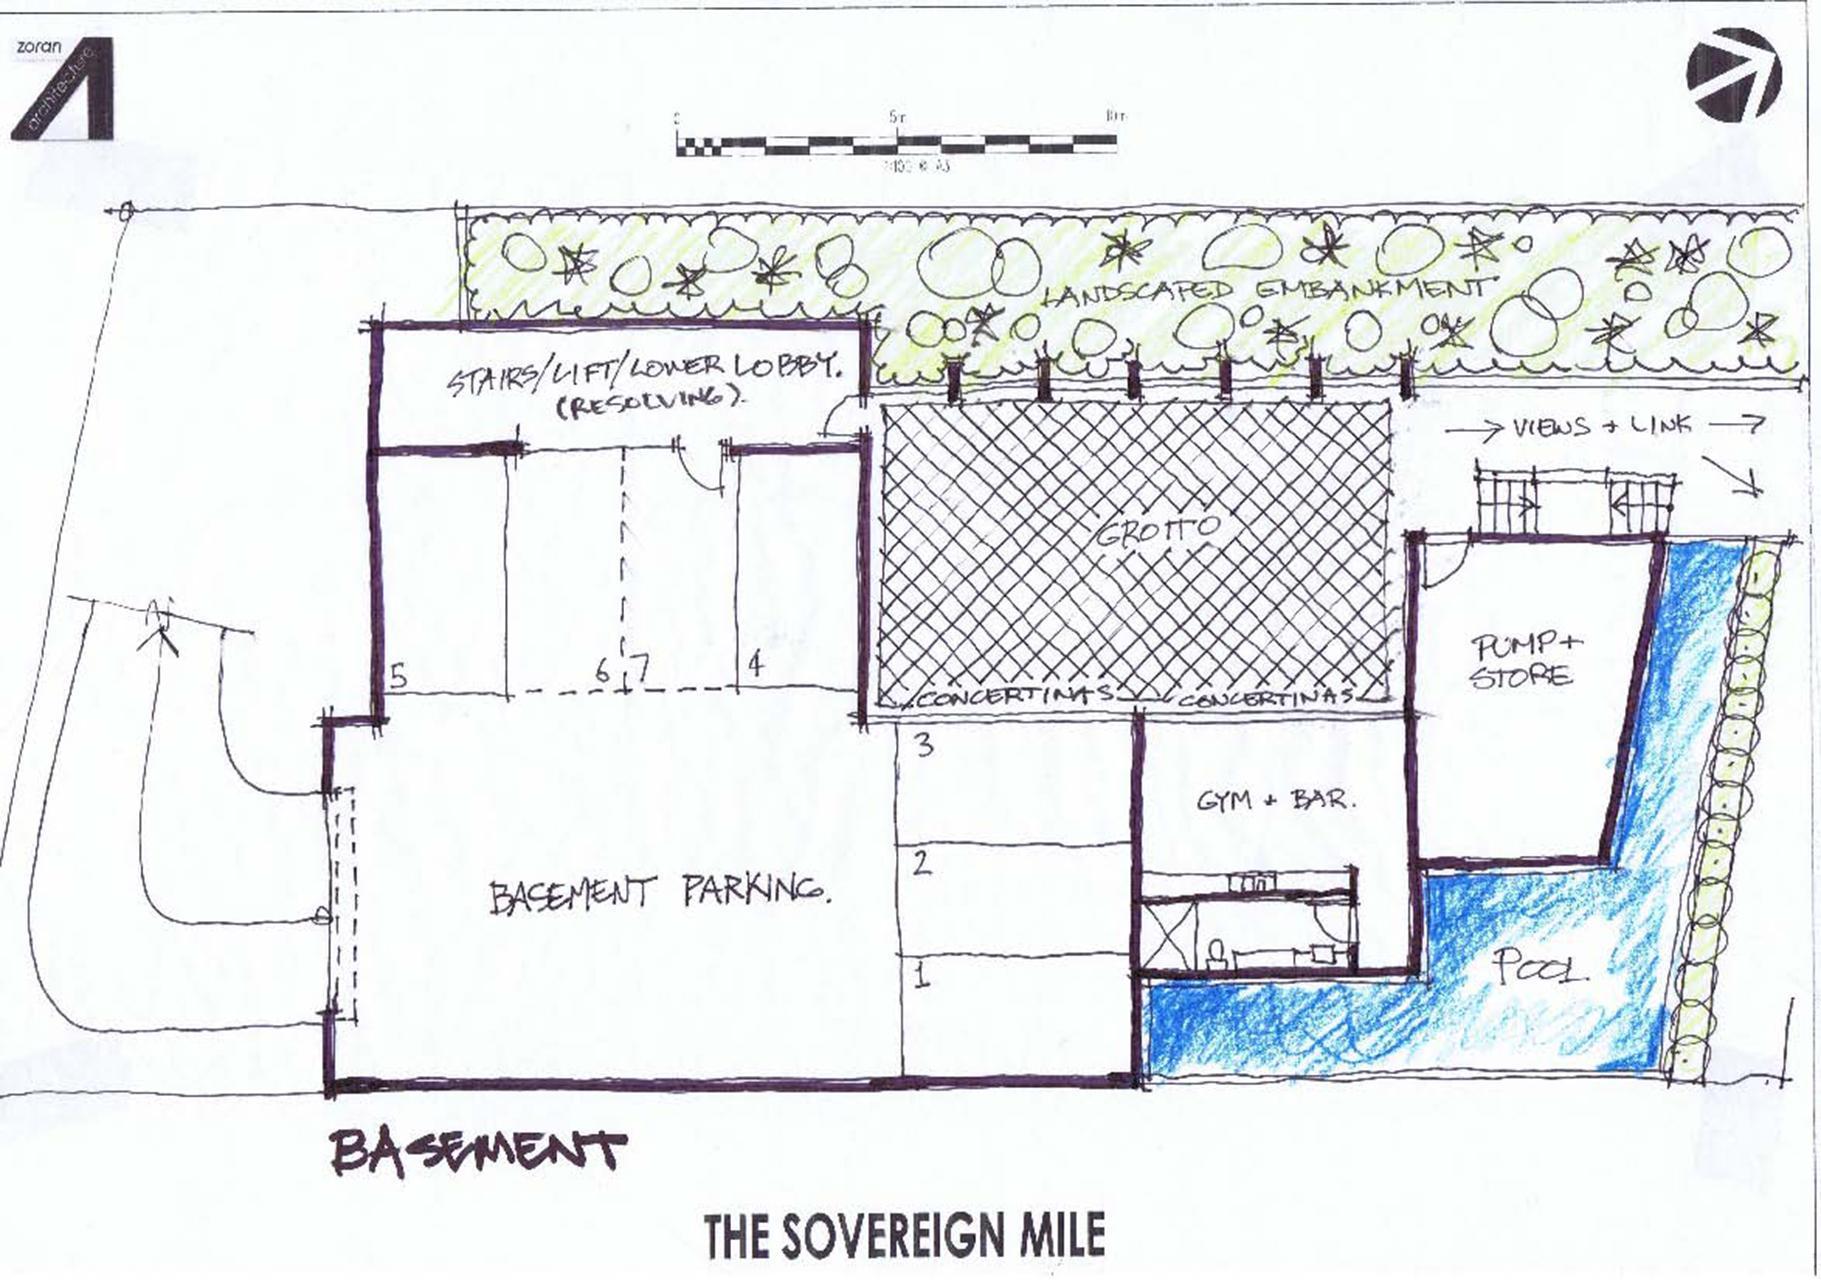 concept 1 - basement (level 0)